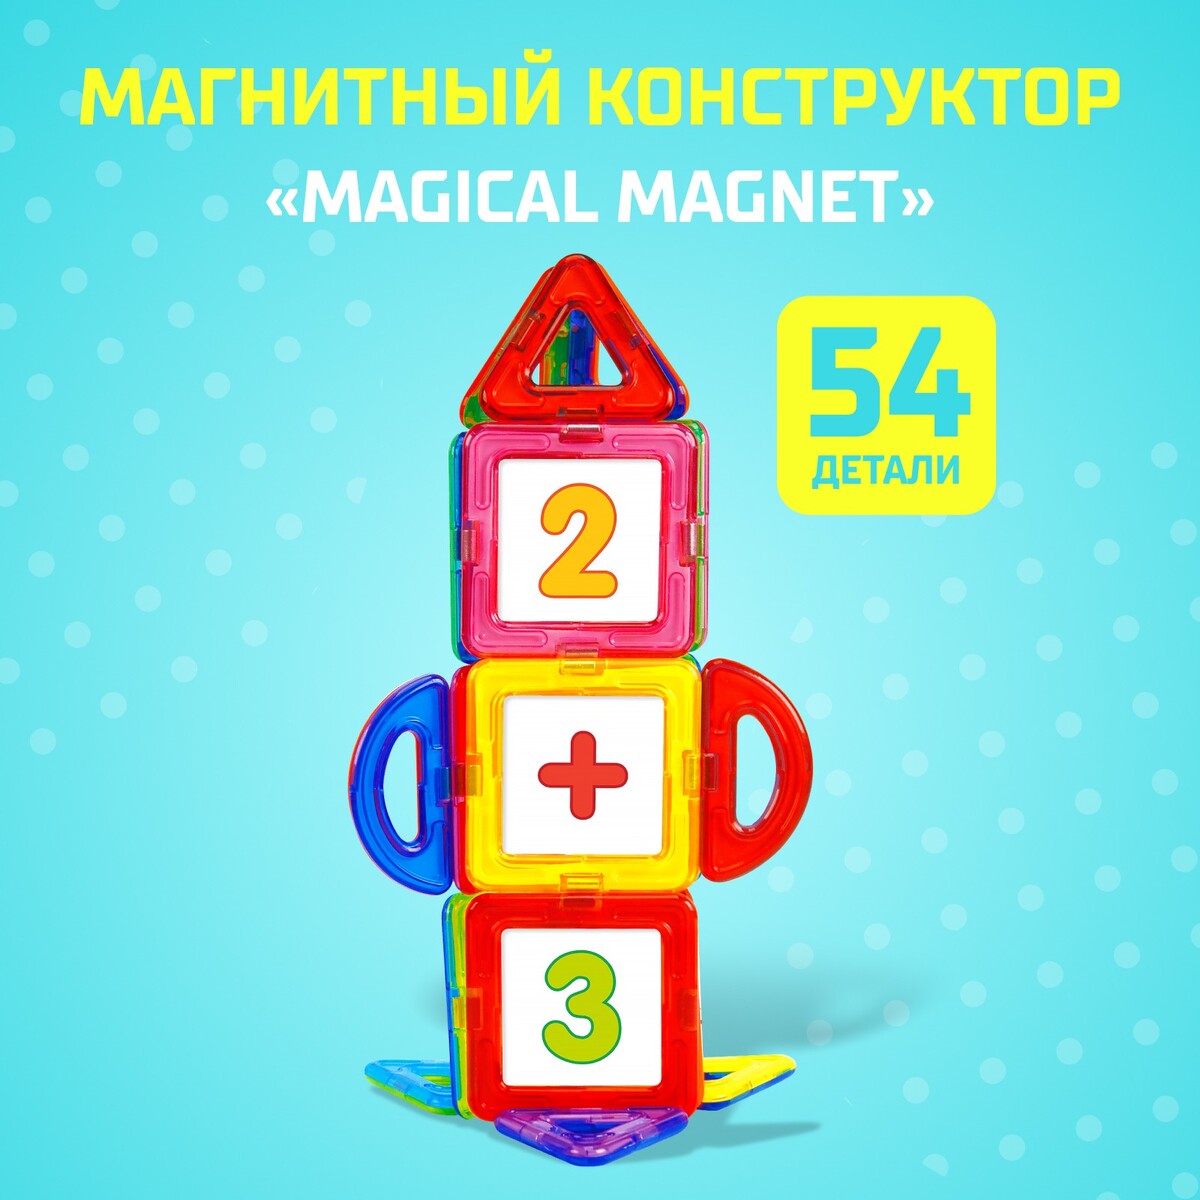 Магнитный конструктор magical magnet, 54 детали, детали матовые конструктор магнитный 42 детали